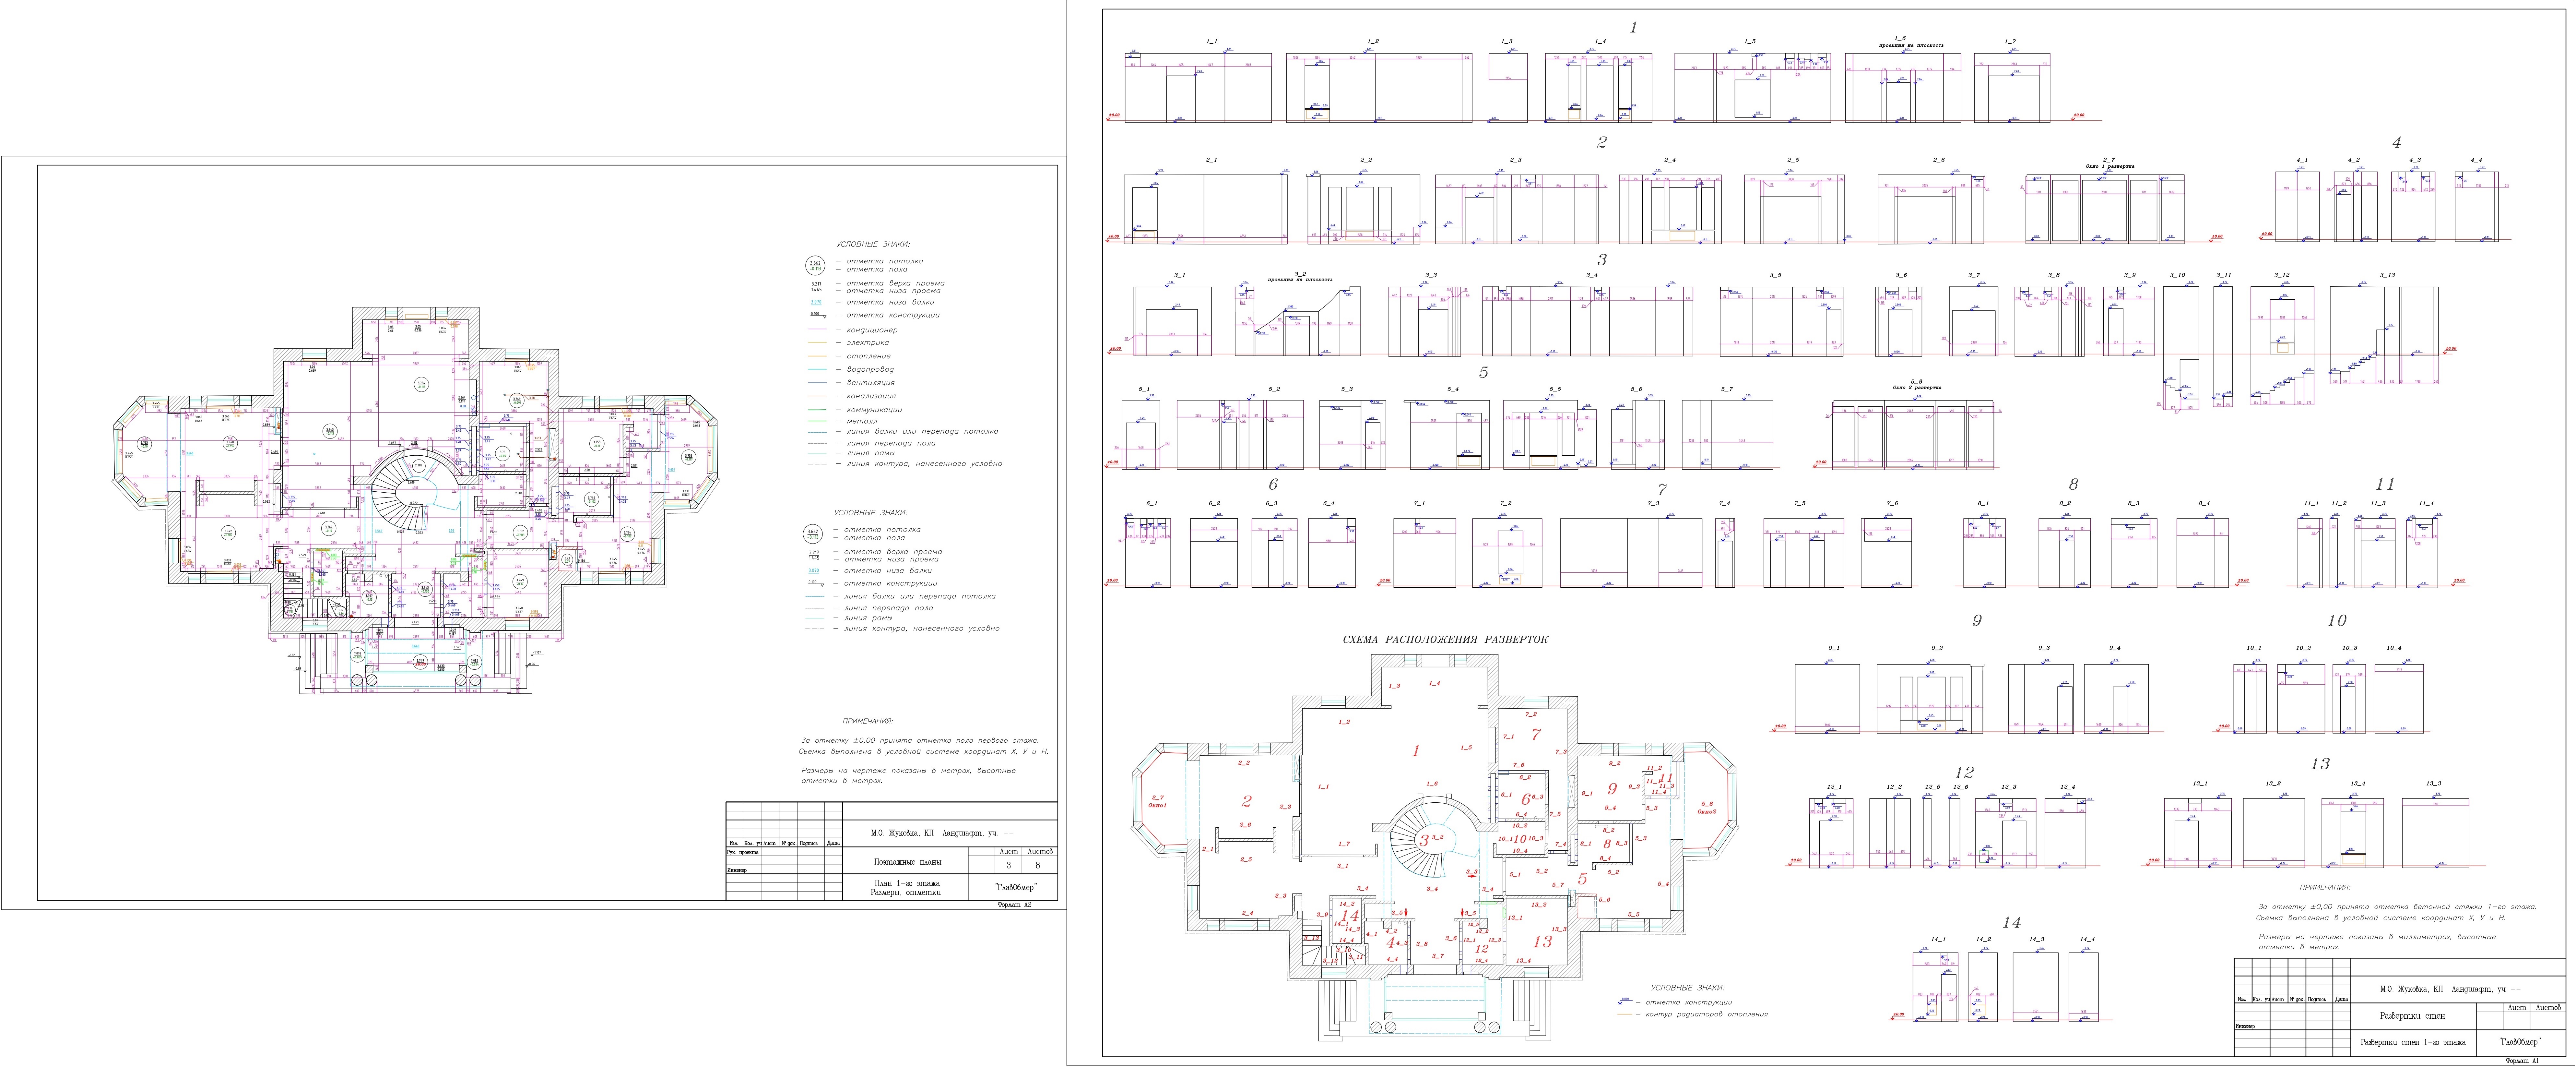 1. Жуковка коттеджный поселок Ландшафт - обмерный план первого этажа с коммуникациями и развертками